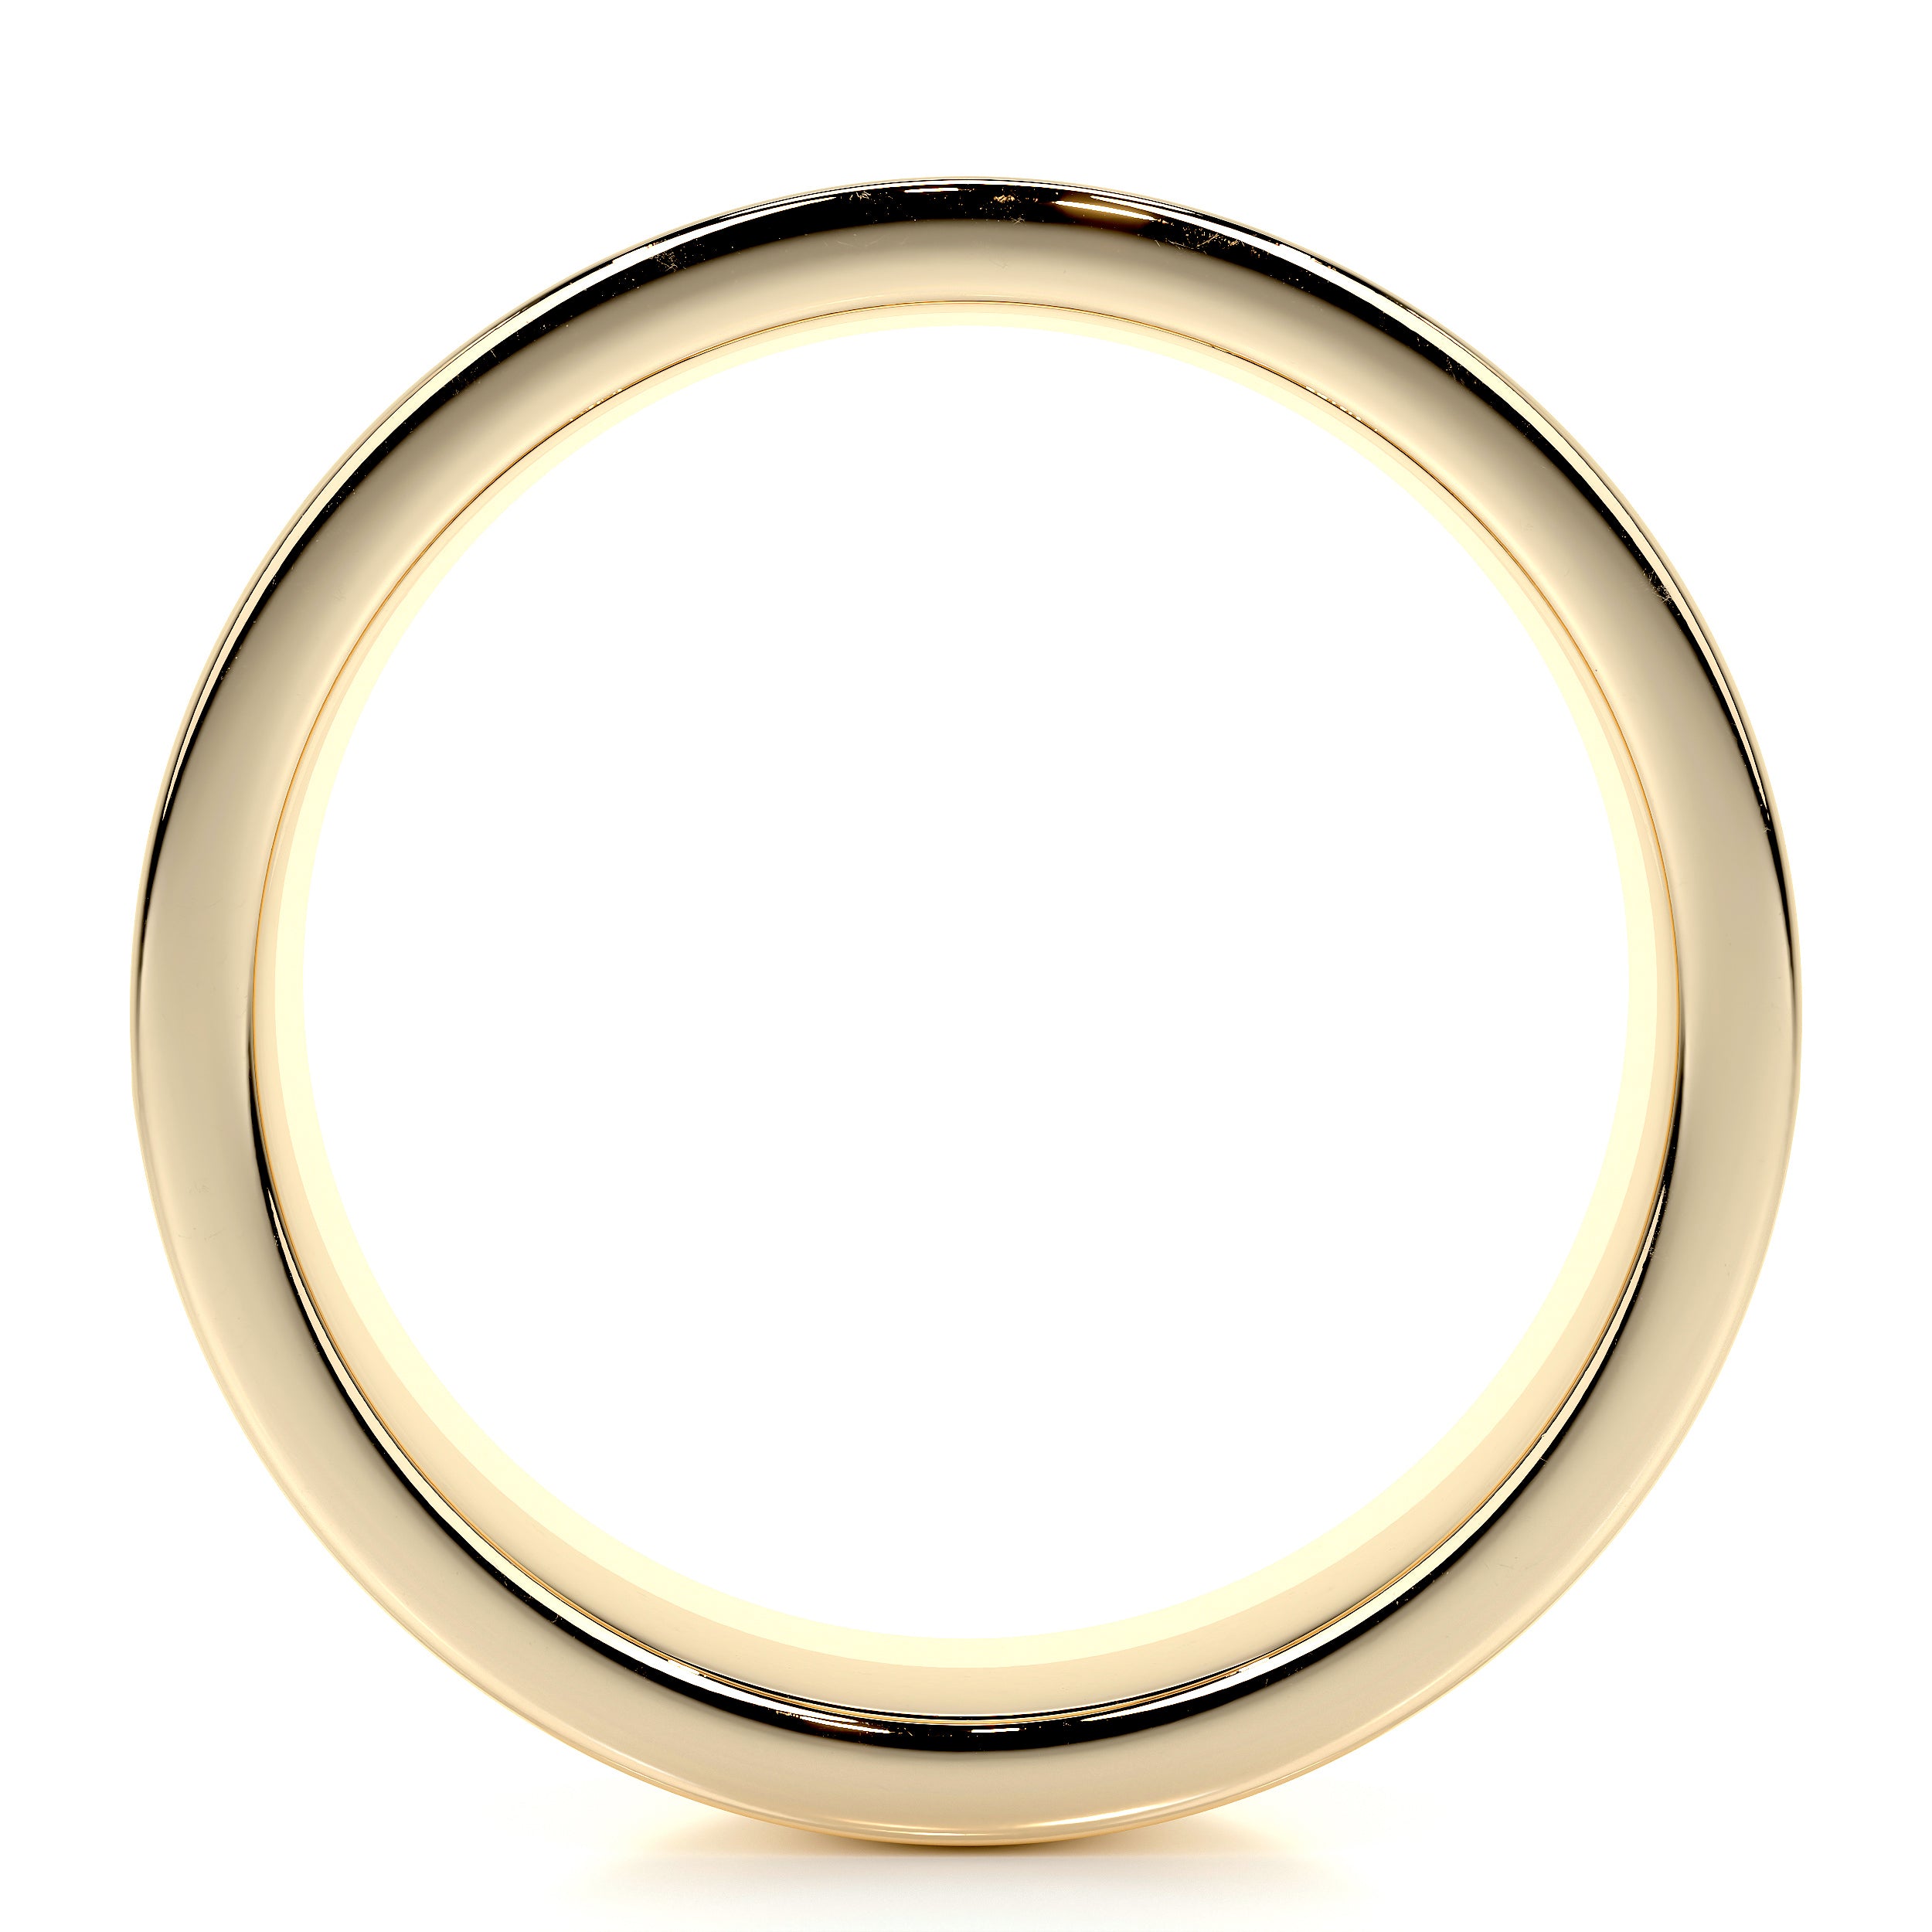 June Lab Grown Diamond Wedding Ring   (1 Carat) -18K Yellow Gold